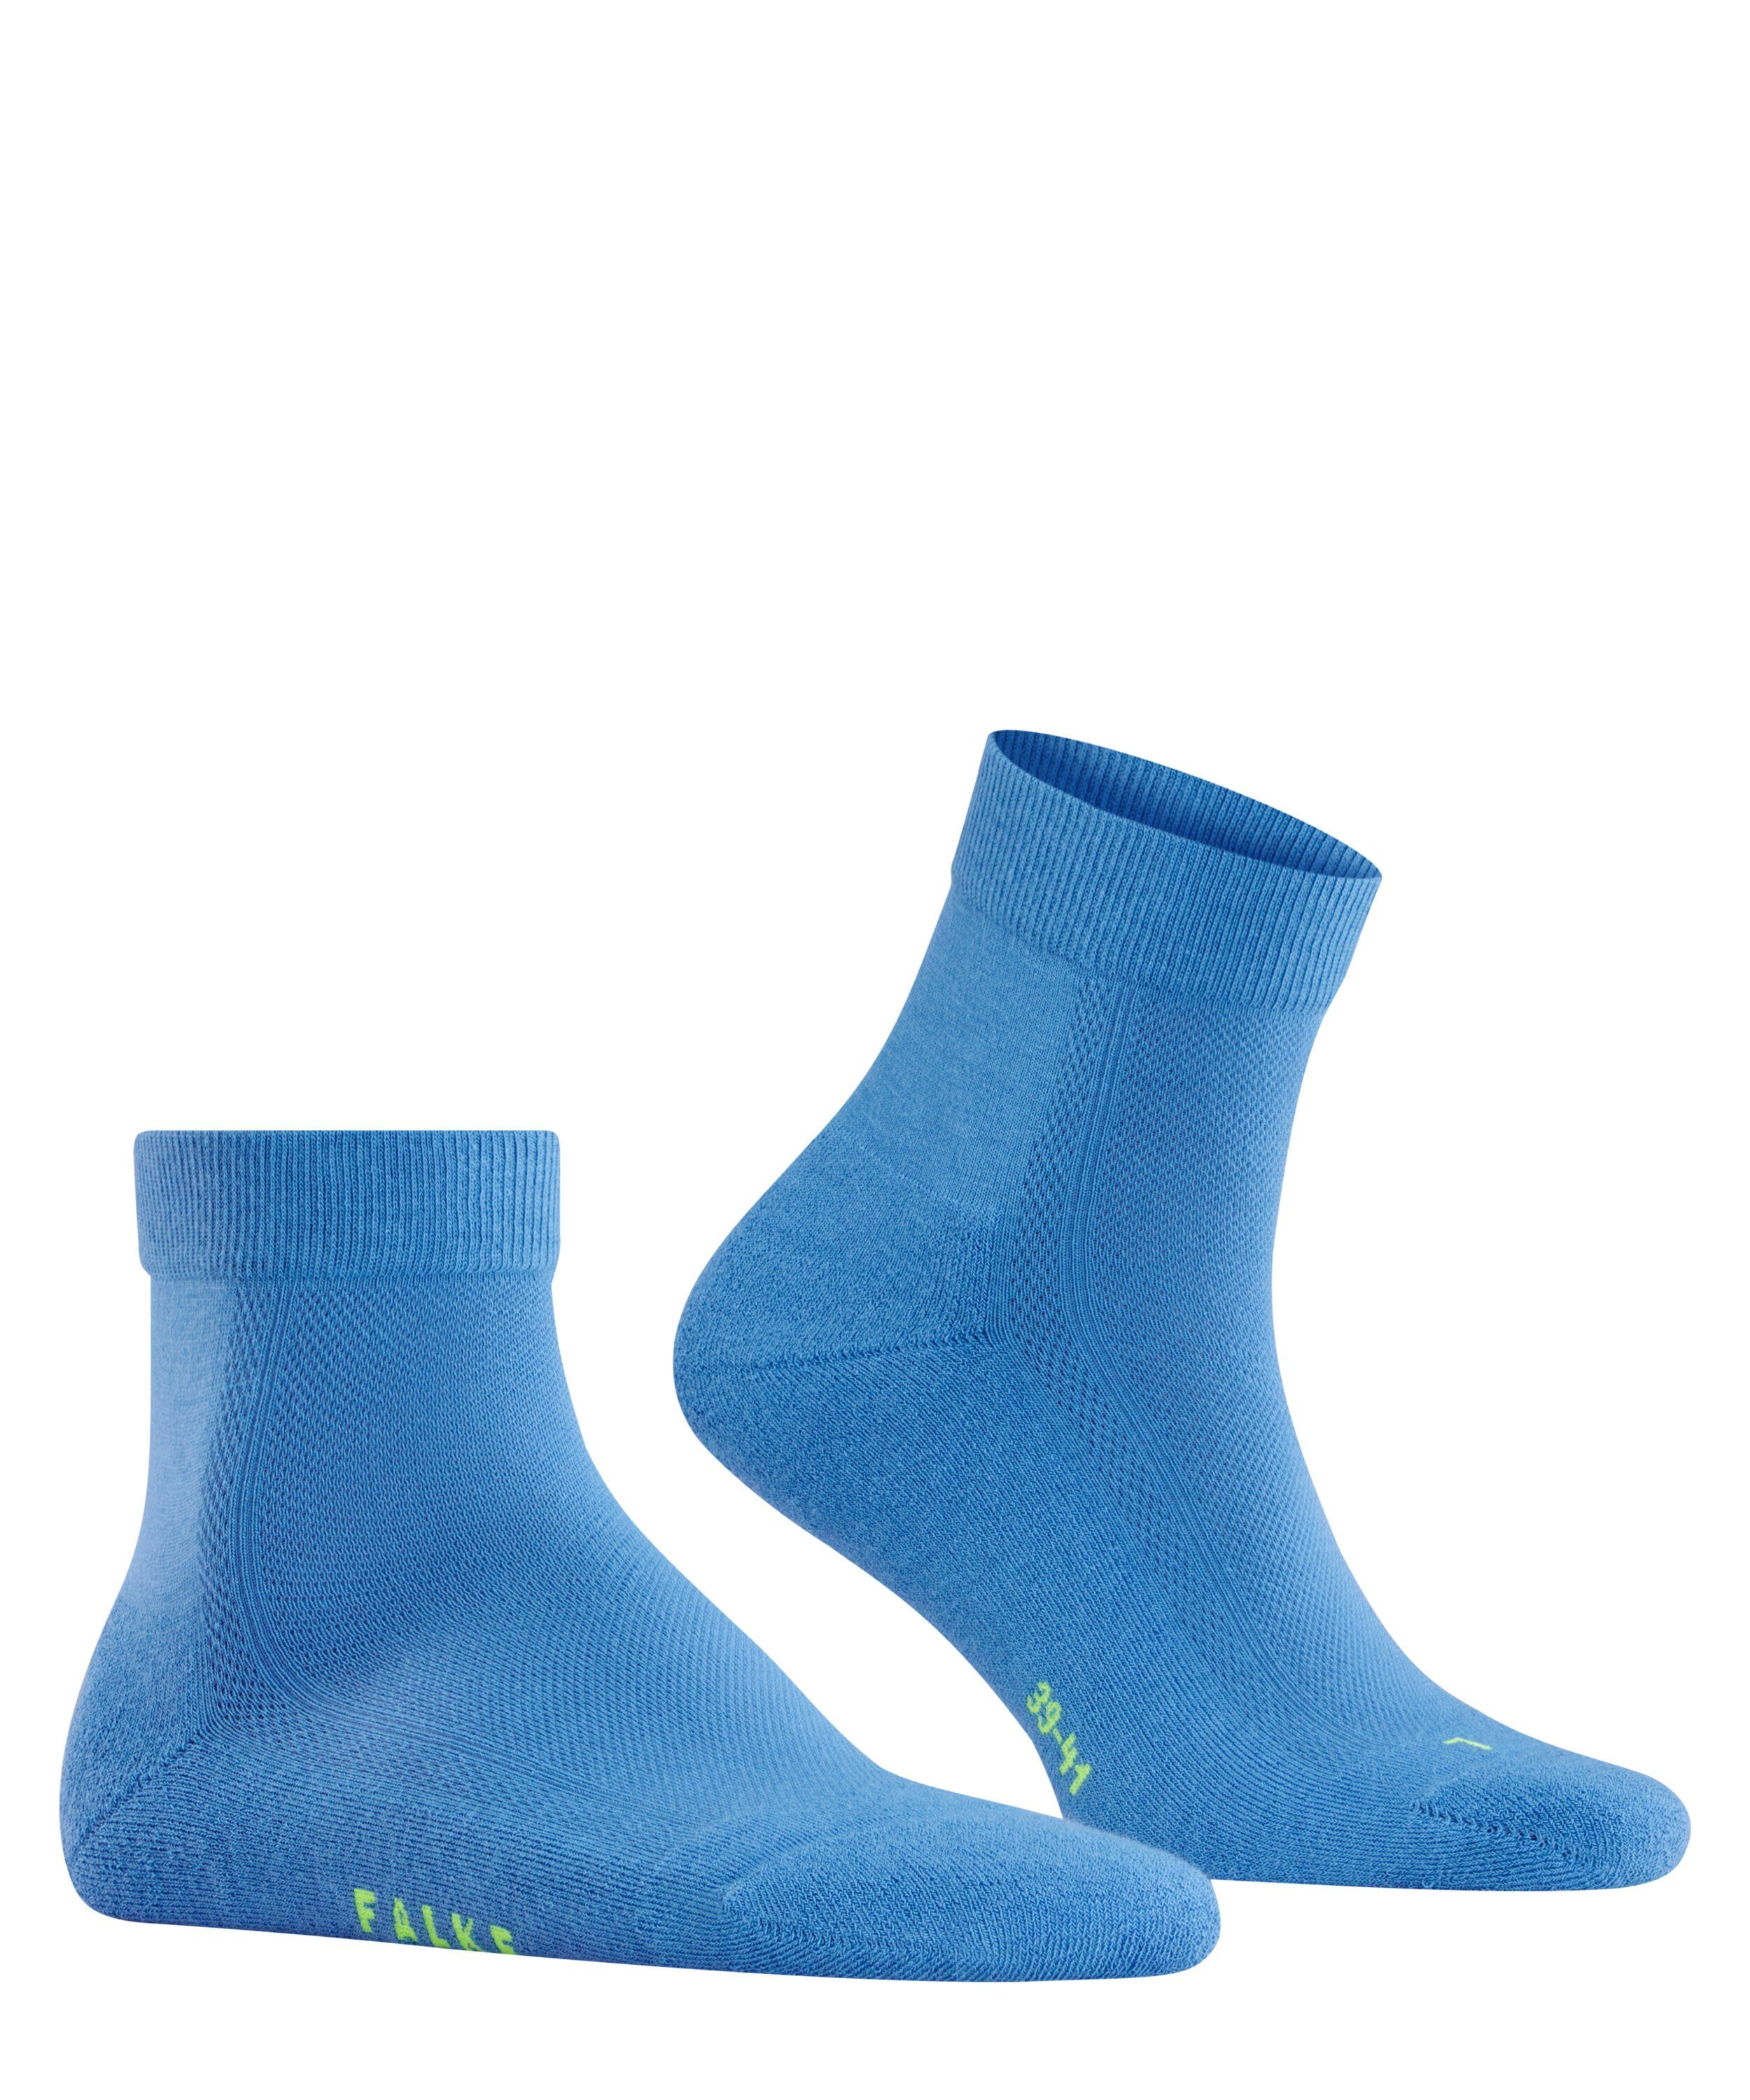 (6311) Cool (1-Paar) Socken FALKE blue/grey Kick